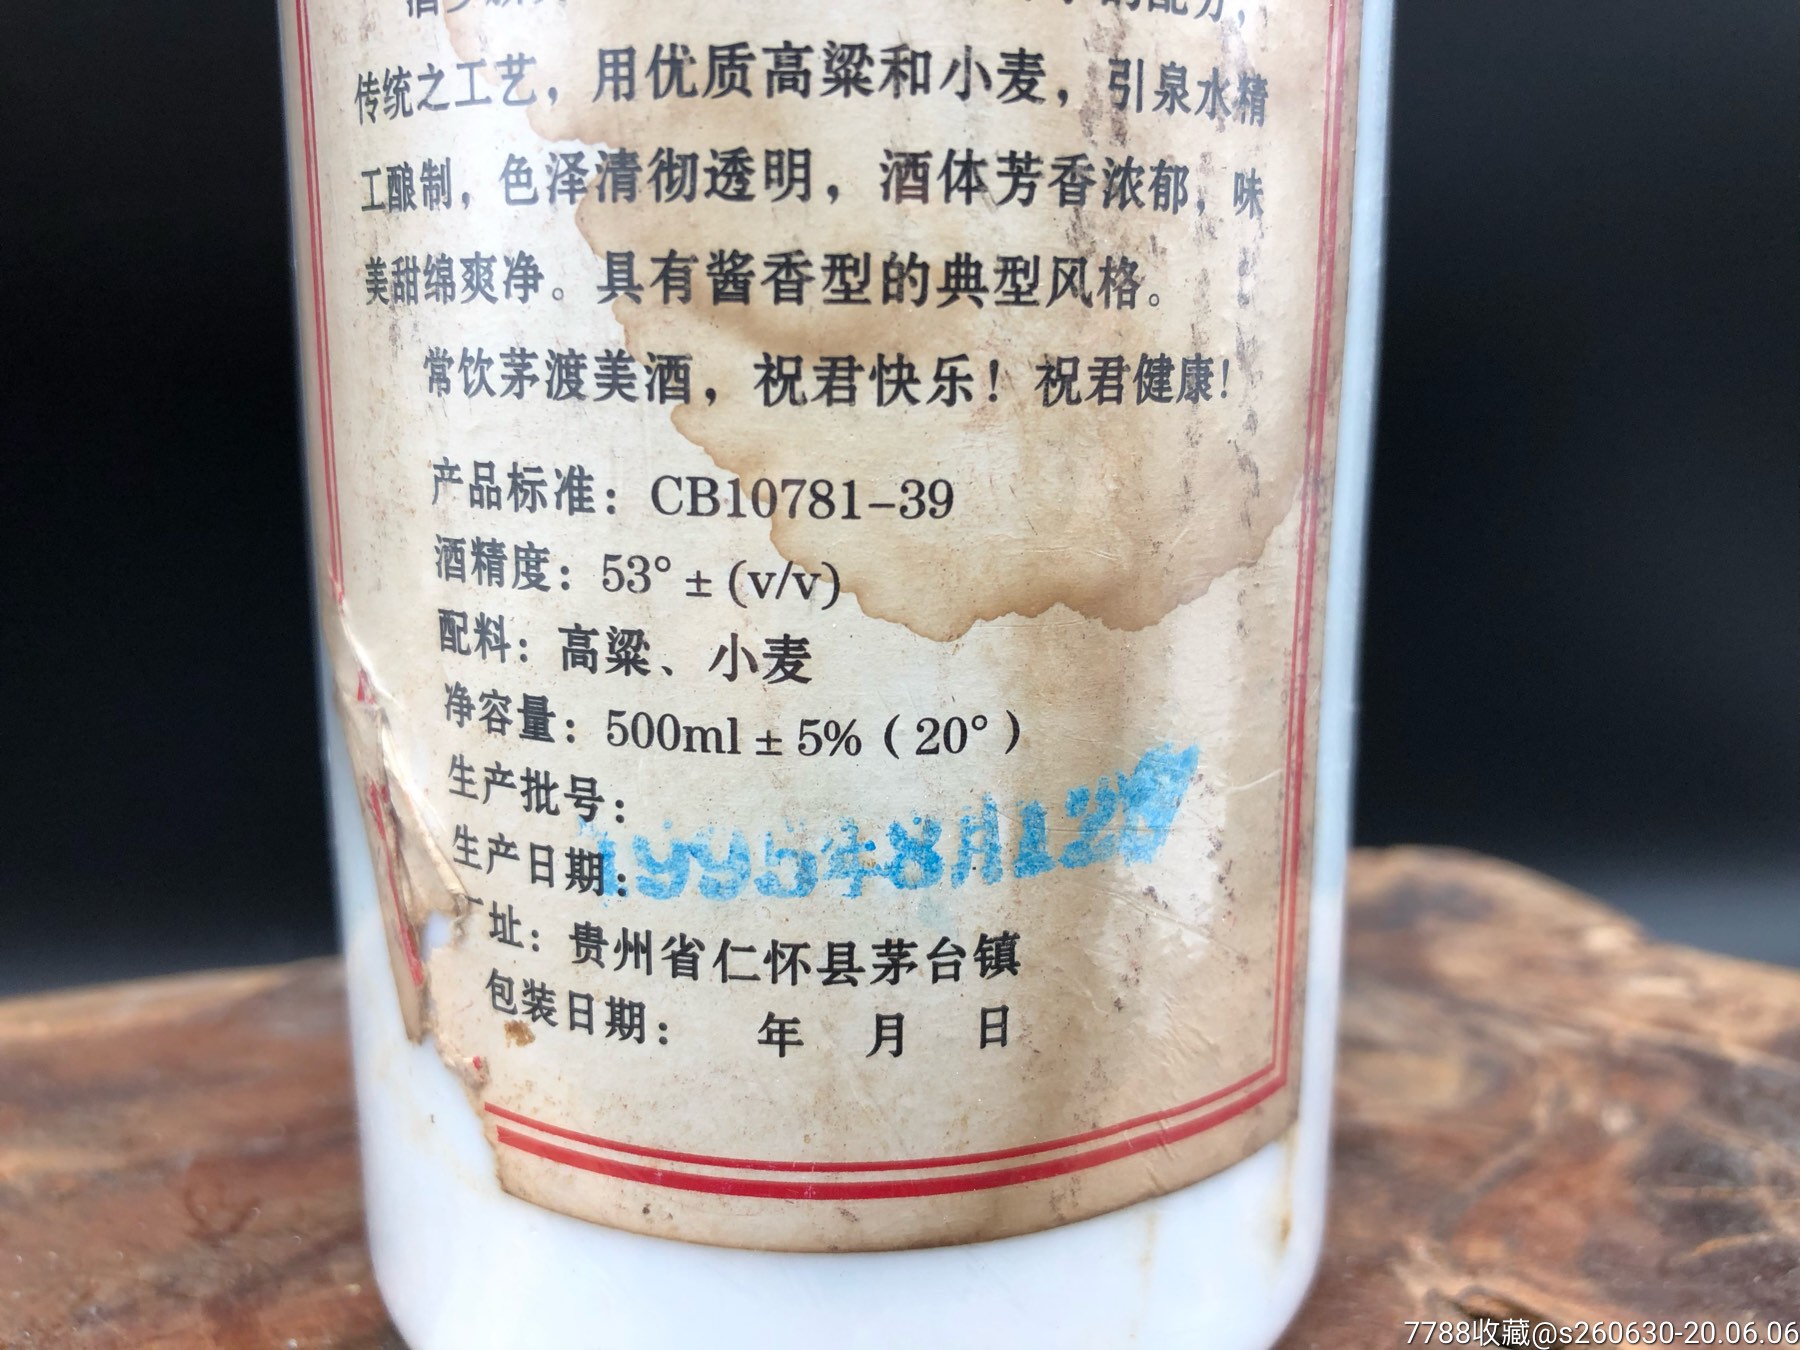 一瓶贵州茅台酿酒厂1995年出品的茅渡大曲茅渡大曲!